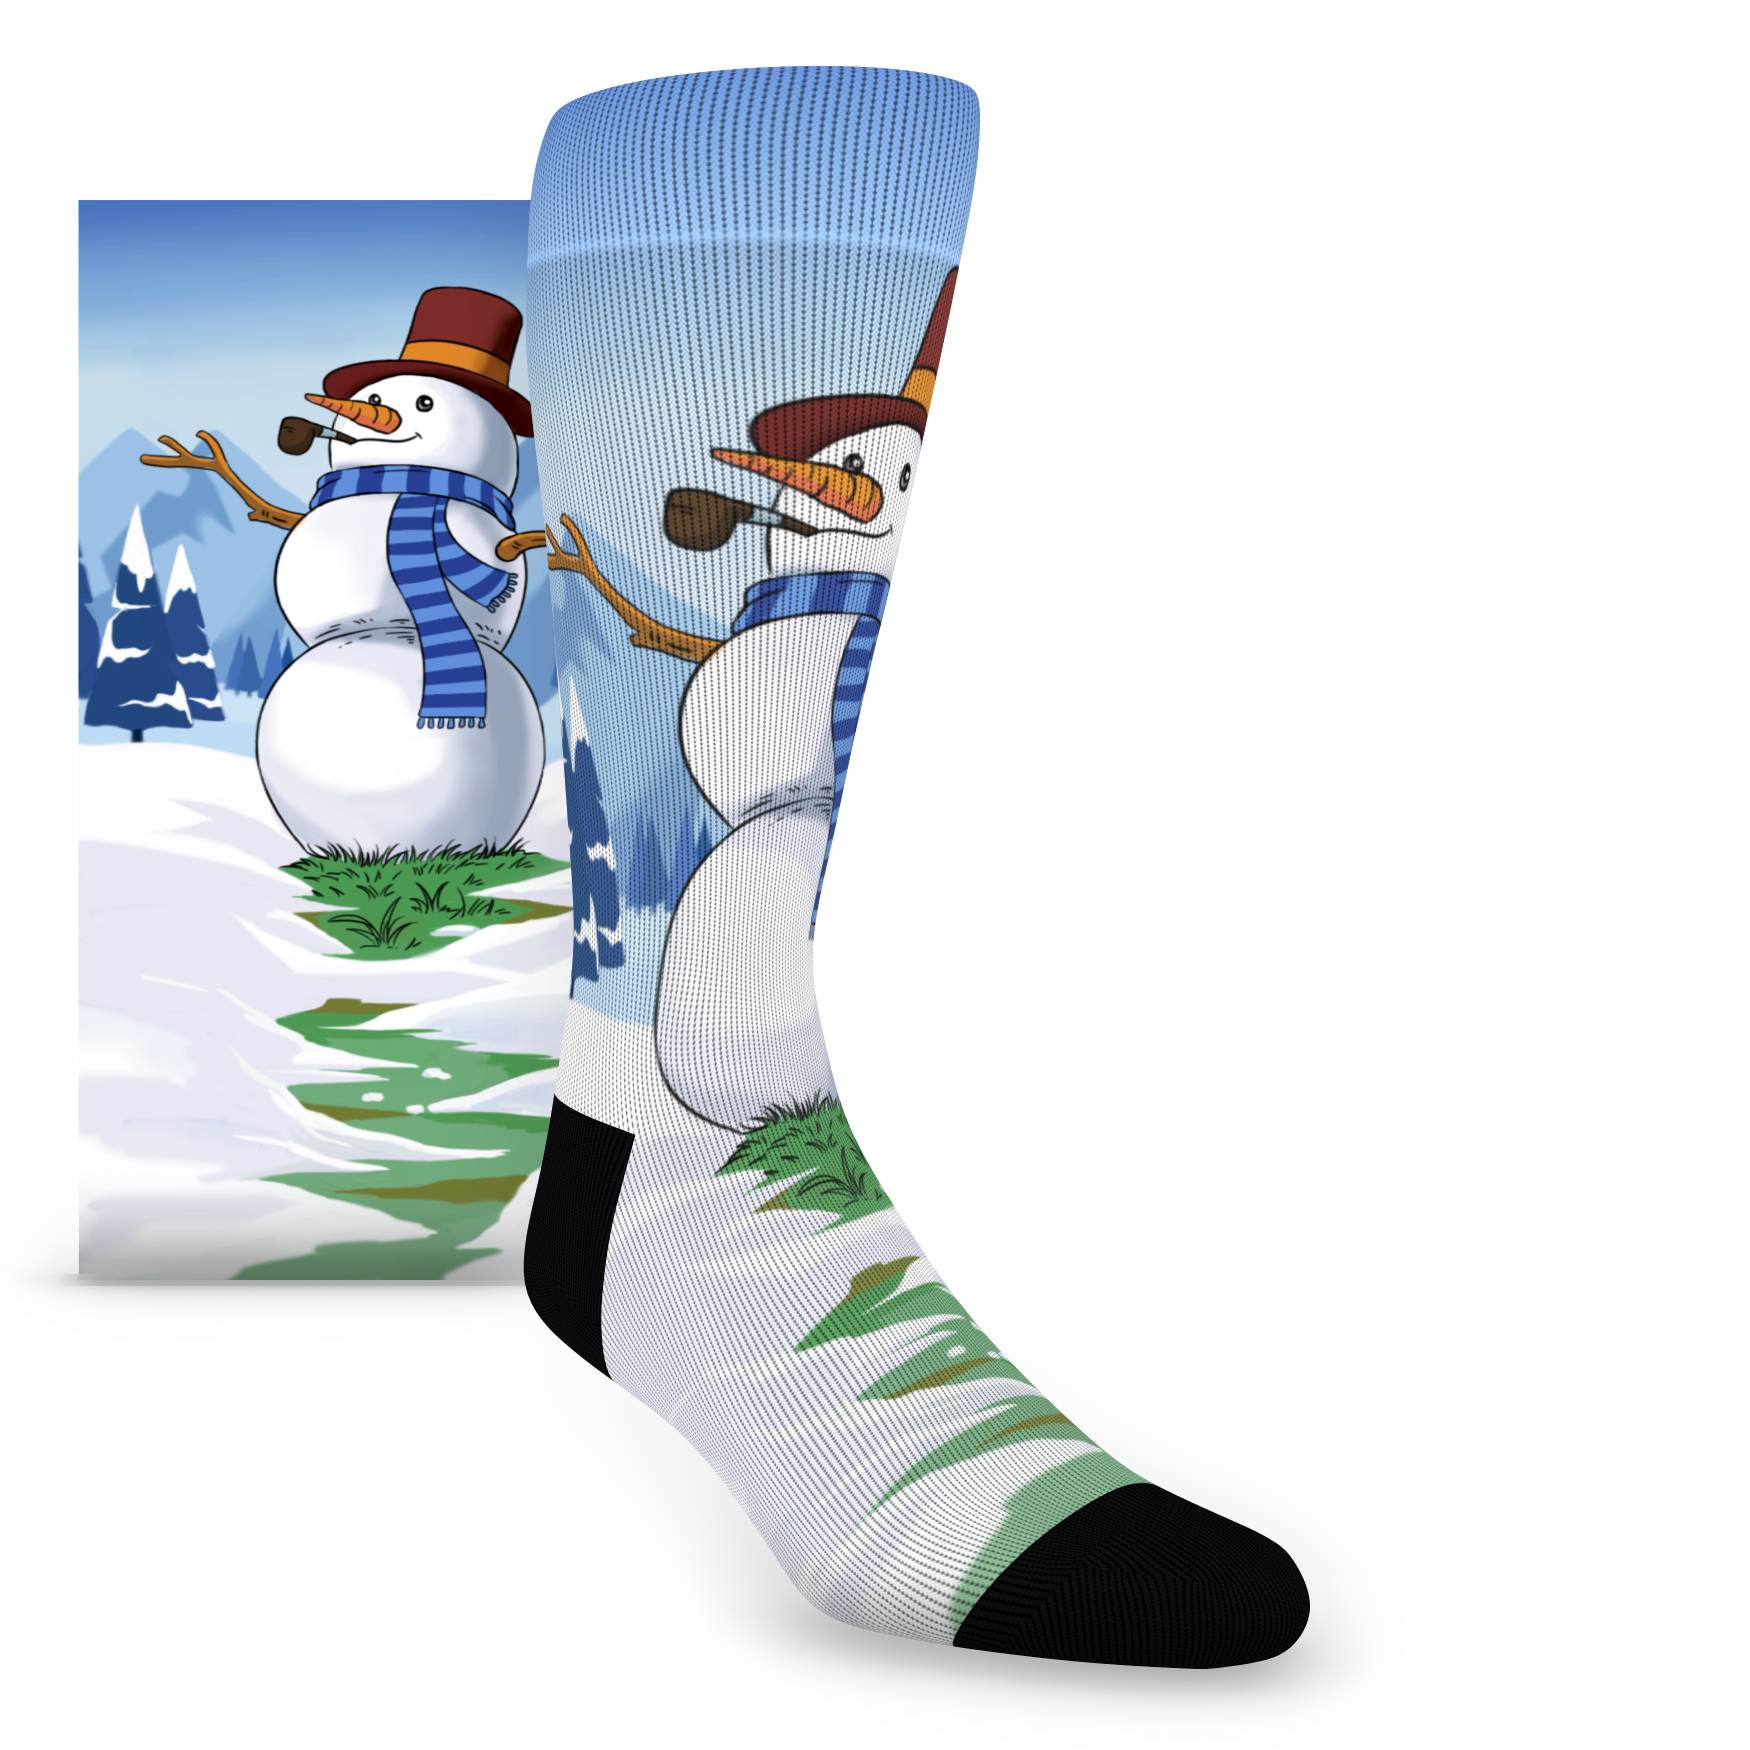 Snowman Socks - Printed Men's Novelty Dress Socks